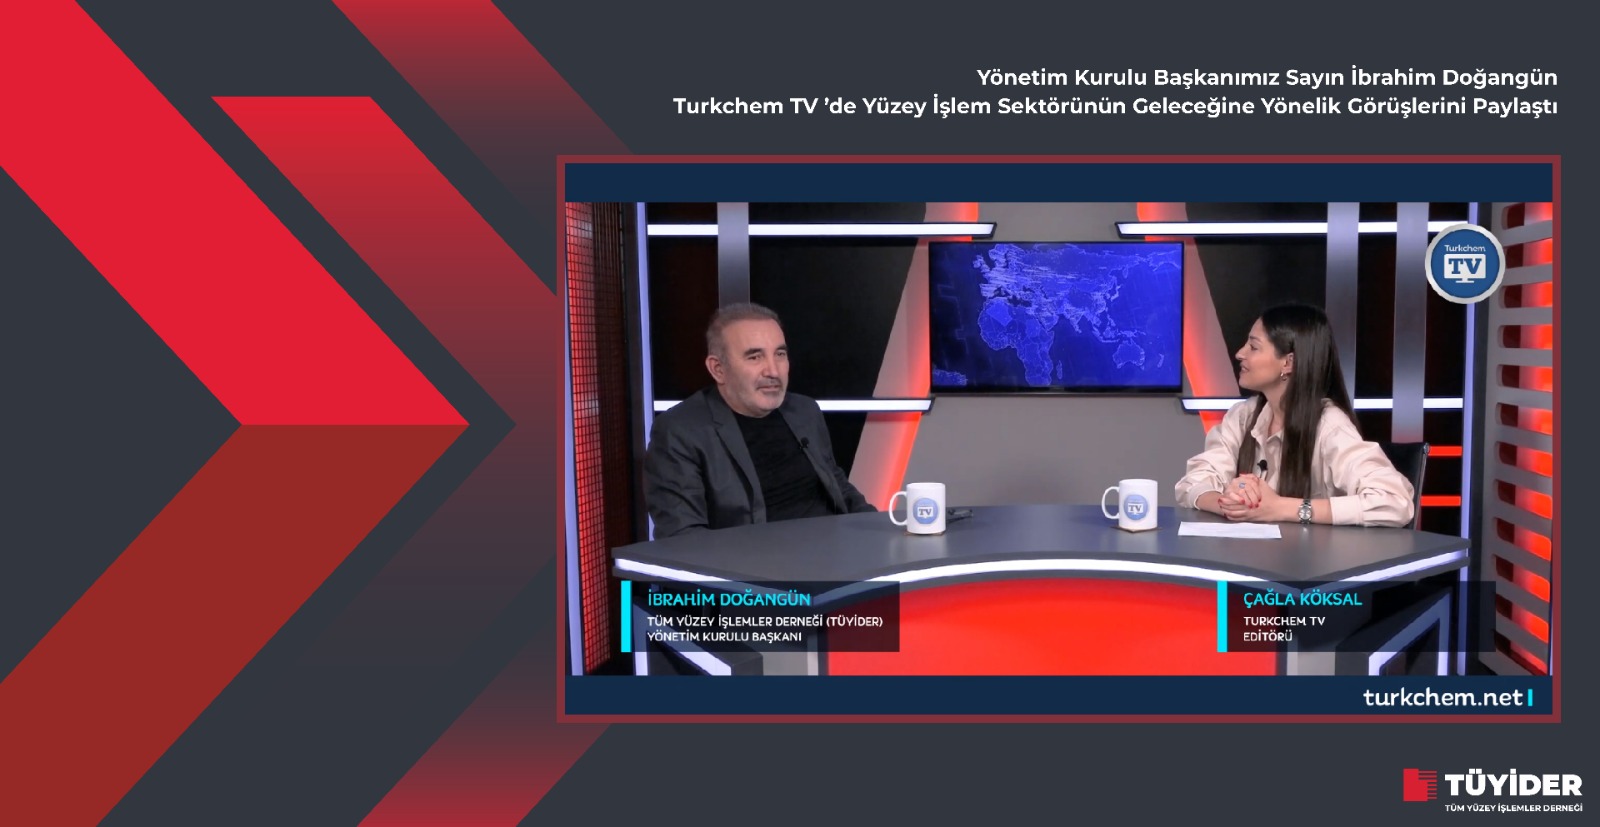 Turkchem TV’ye konuk olduk